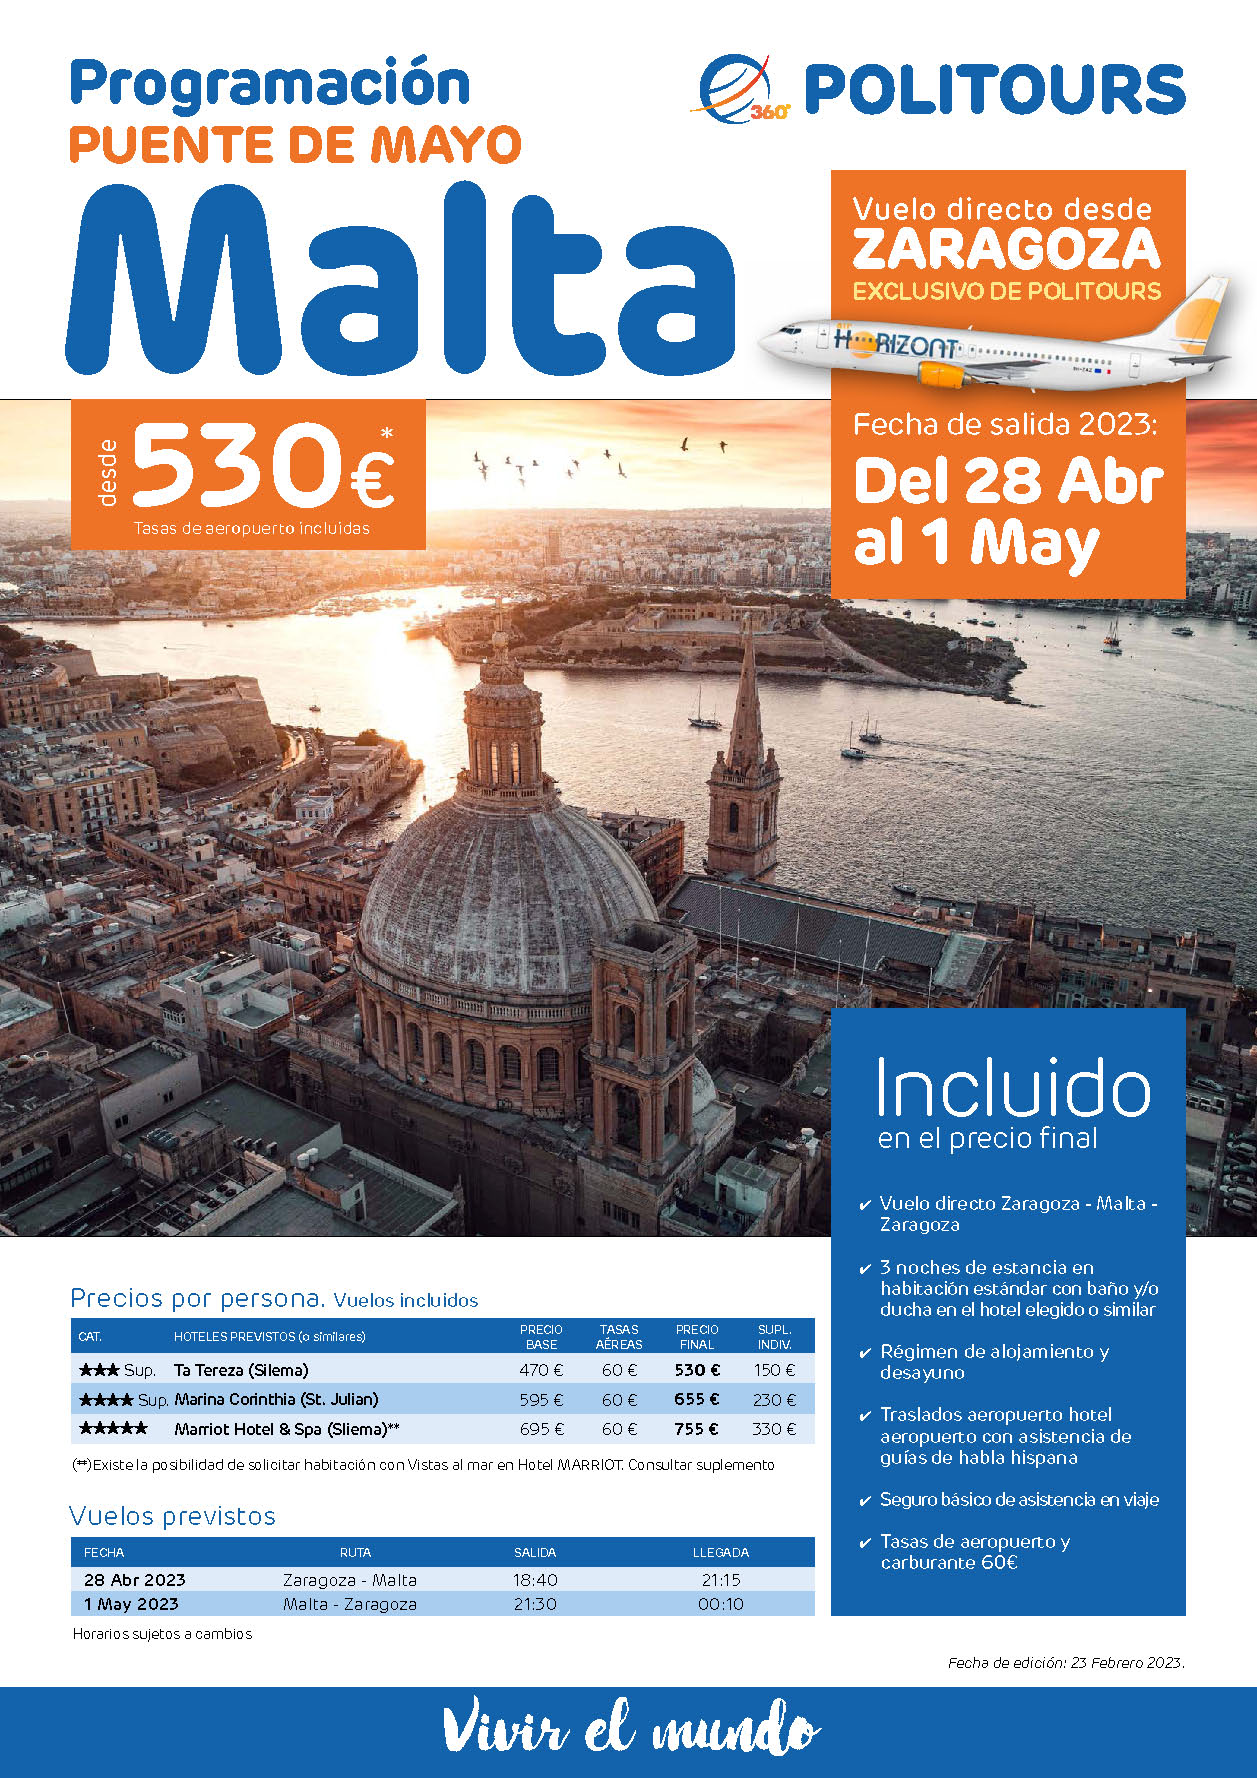 Oferta Politours Puente de Mayo 2023 en Malta 5 dias salida 28 de Abril en vuelo especial directo desde Zaragoza